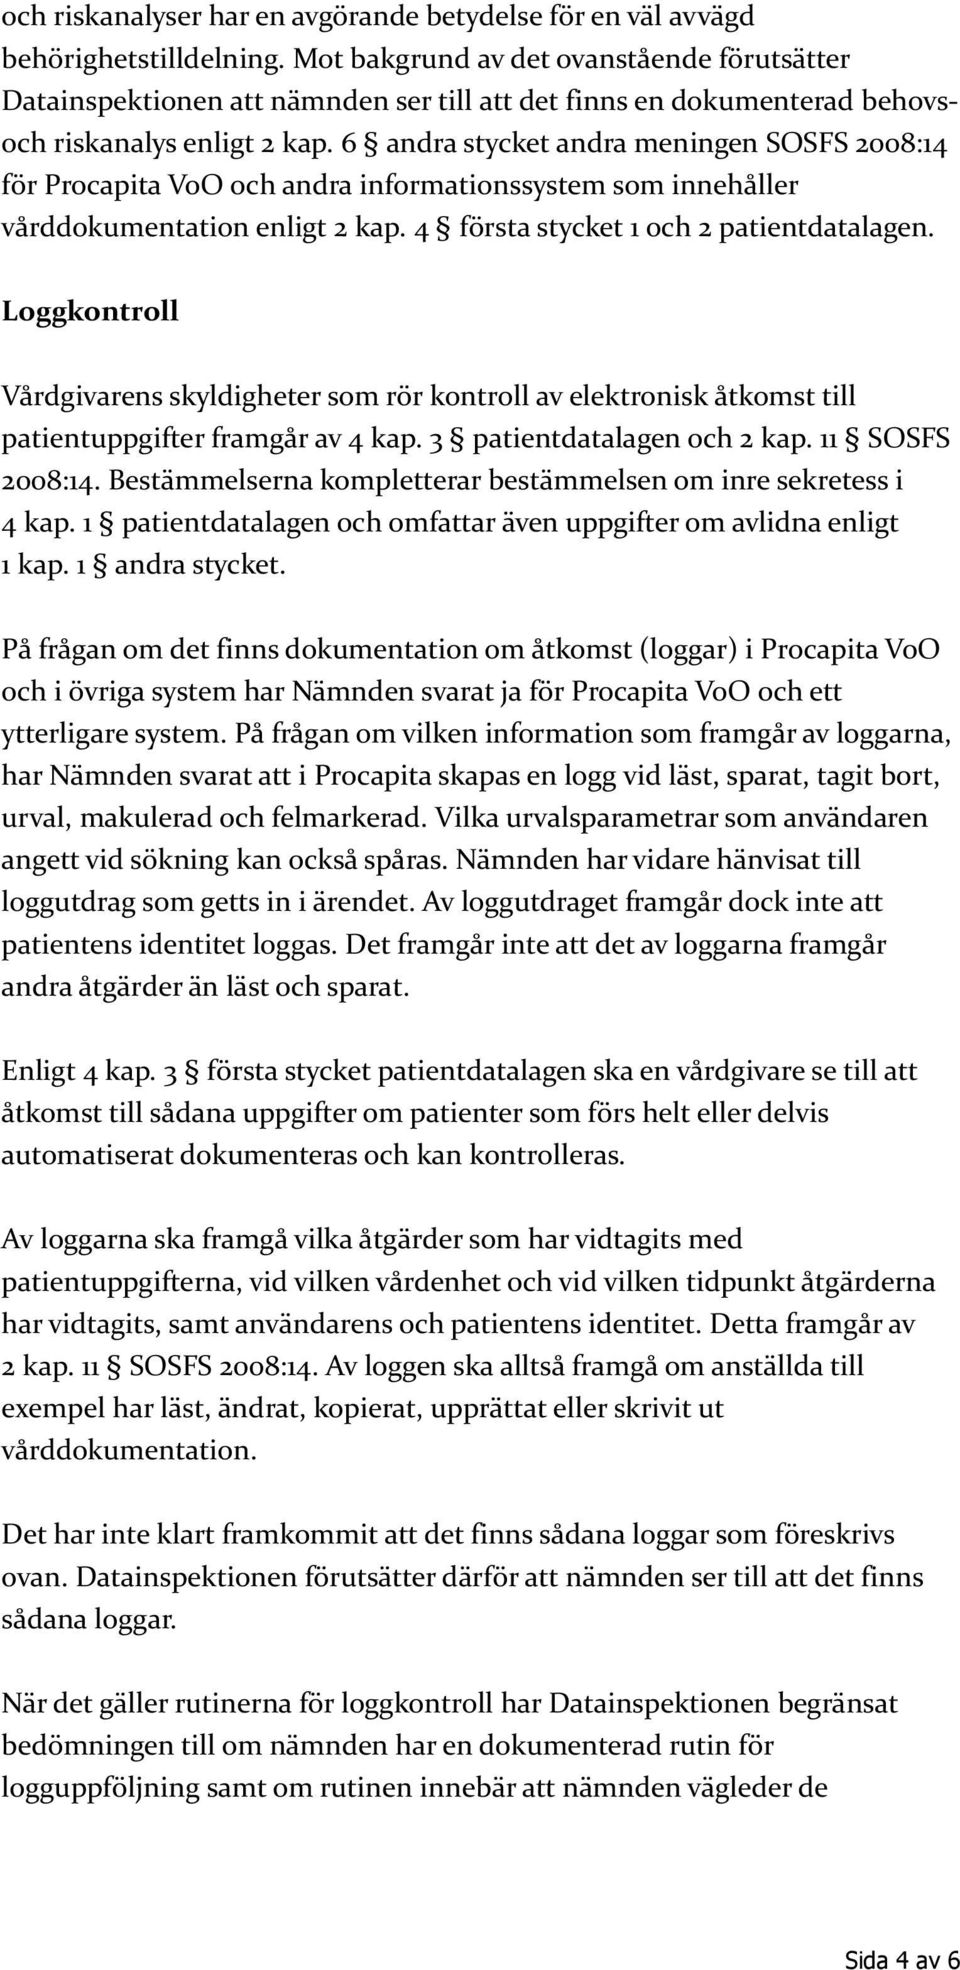 6 andra stycket andra meningen SOSFS 2008:14 för Procapita VoO och andra informationssystem som innehåller vårddokumentation enligt 2 kap. 4 första stycket 1 och 2 patientdatalagen.